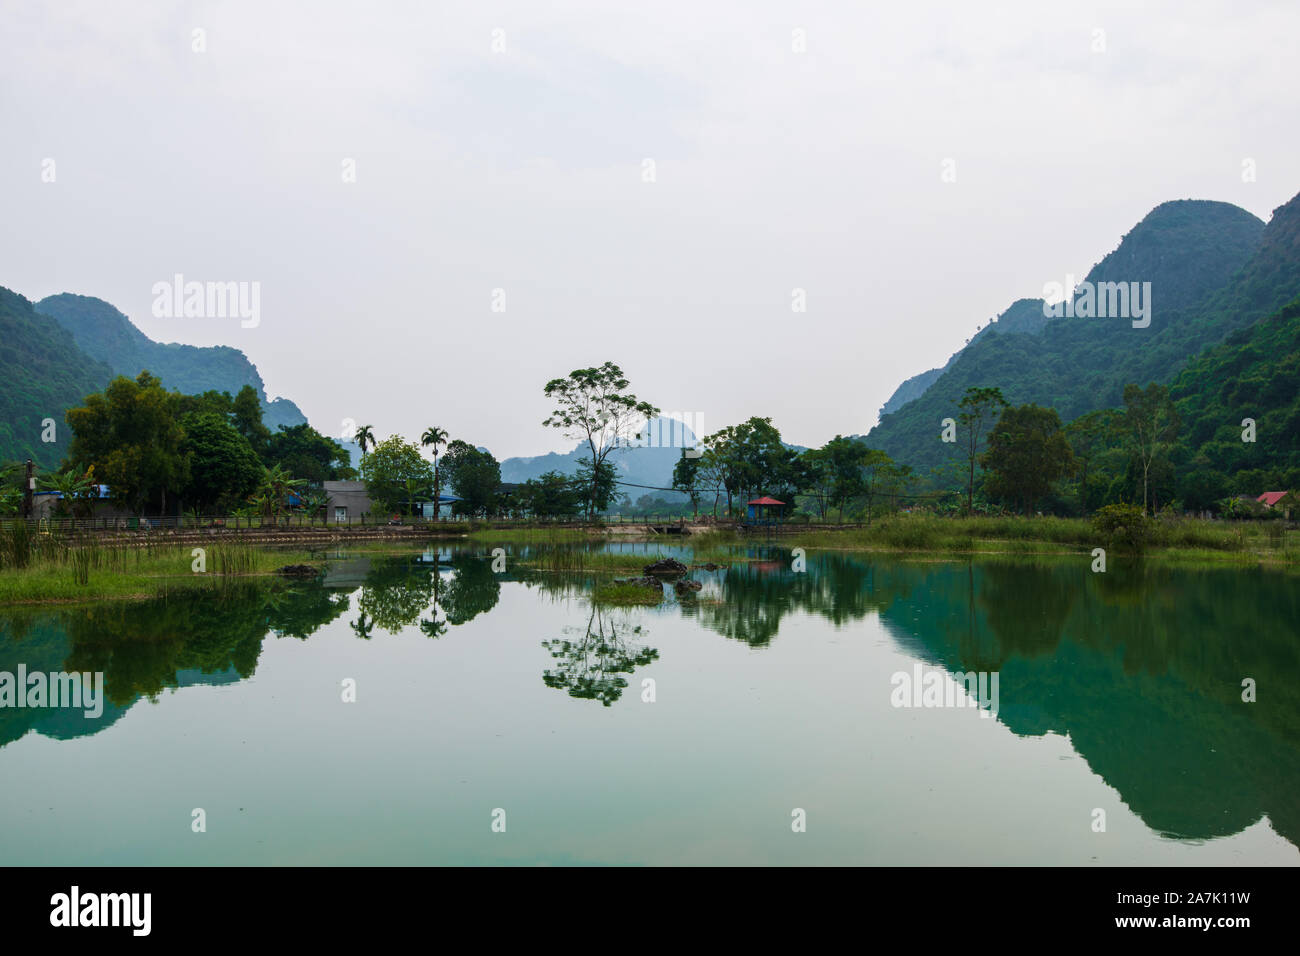 Berge spiegeln sich in eine Glut grüner See auf der versteckten Insel Cat Ba, die regelmäßig mit dem Boot Touren rund um Ha Long Bay besucht wird Stockfoto